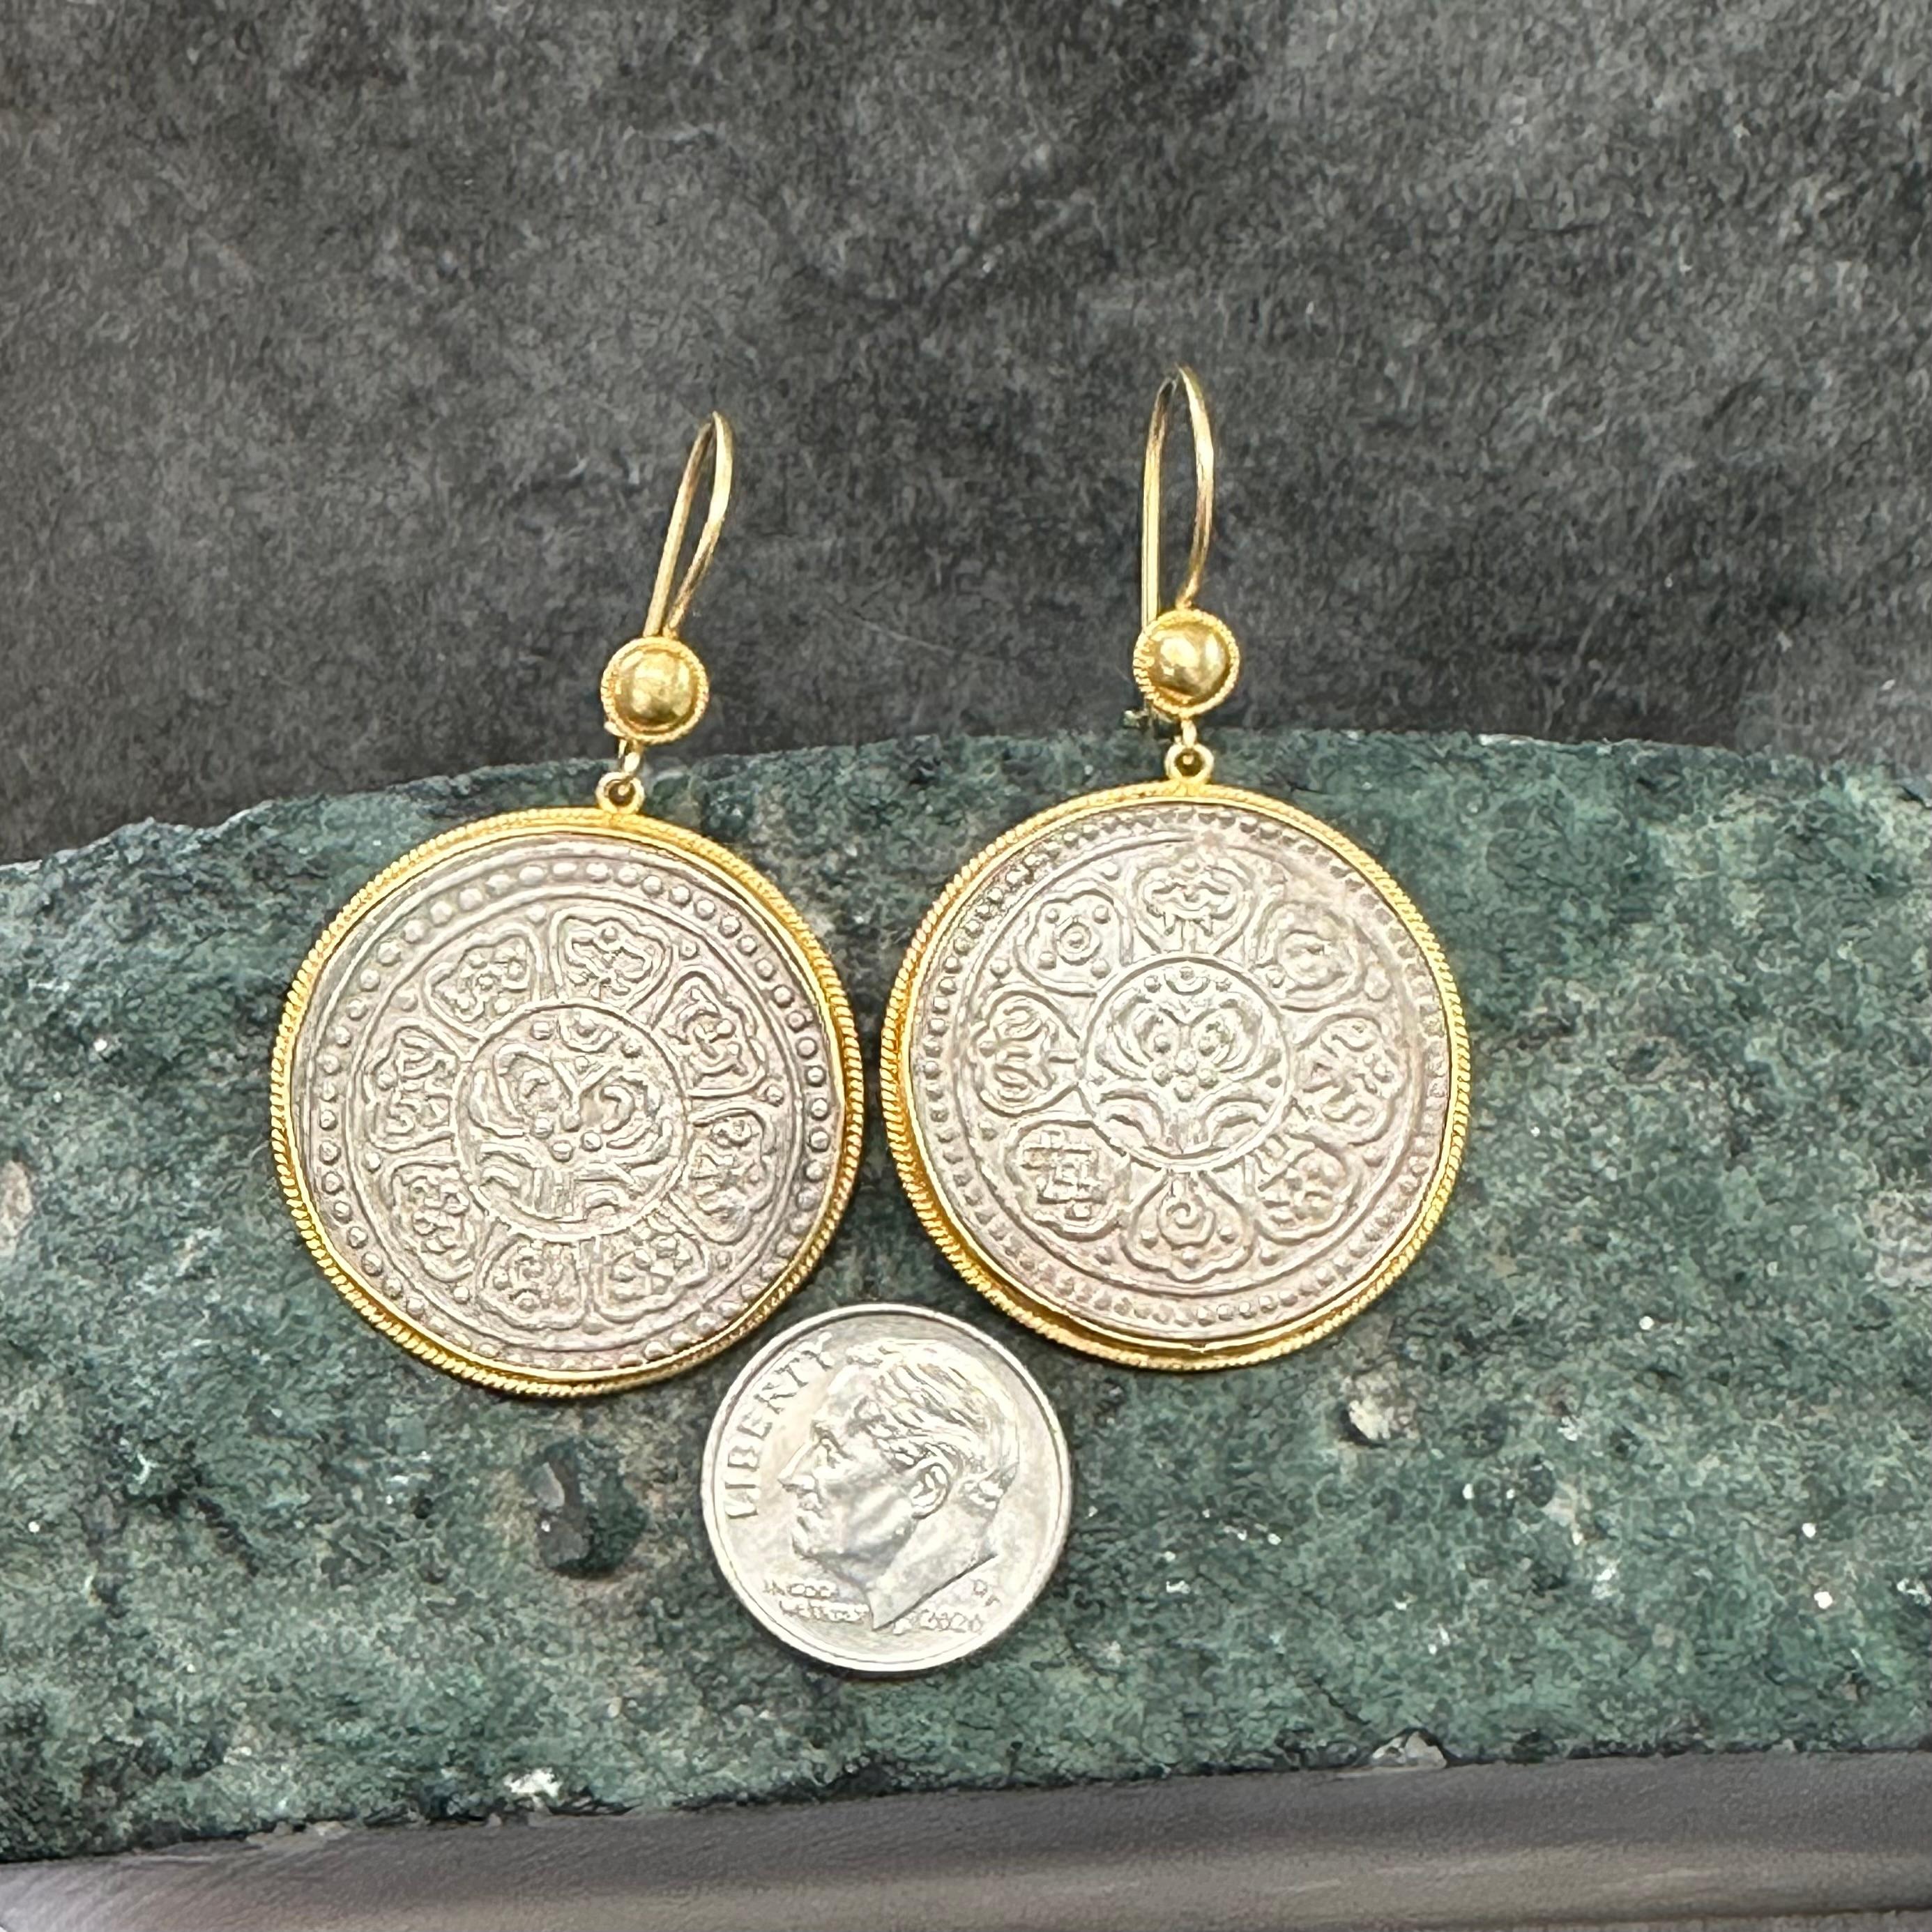 1912 earrings